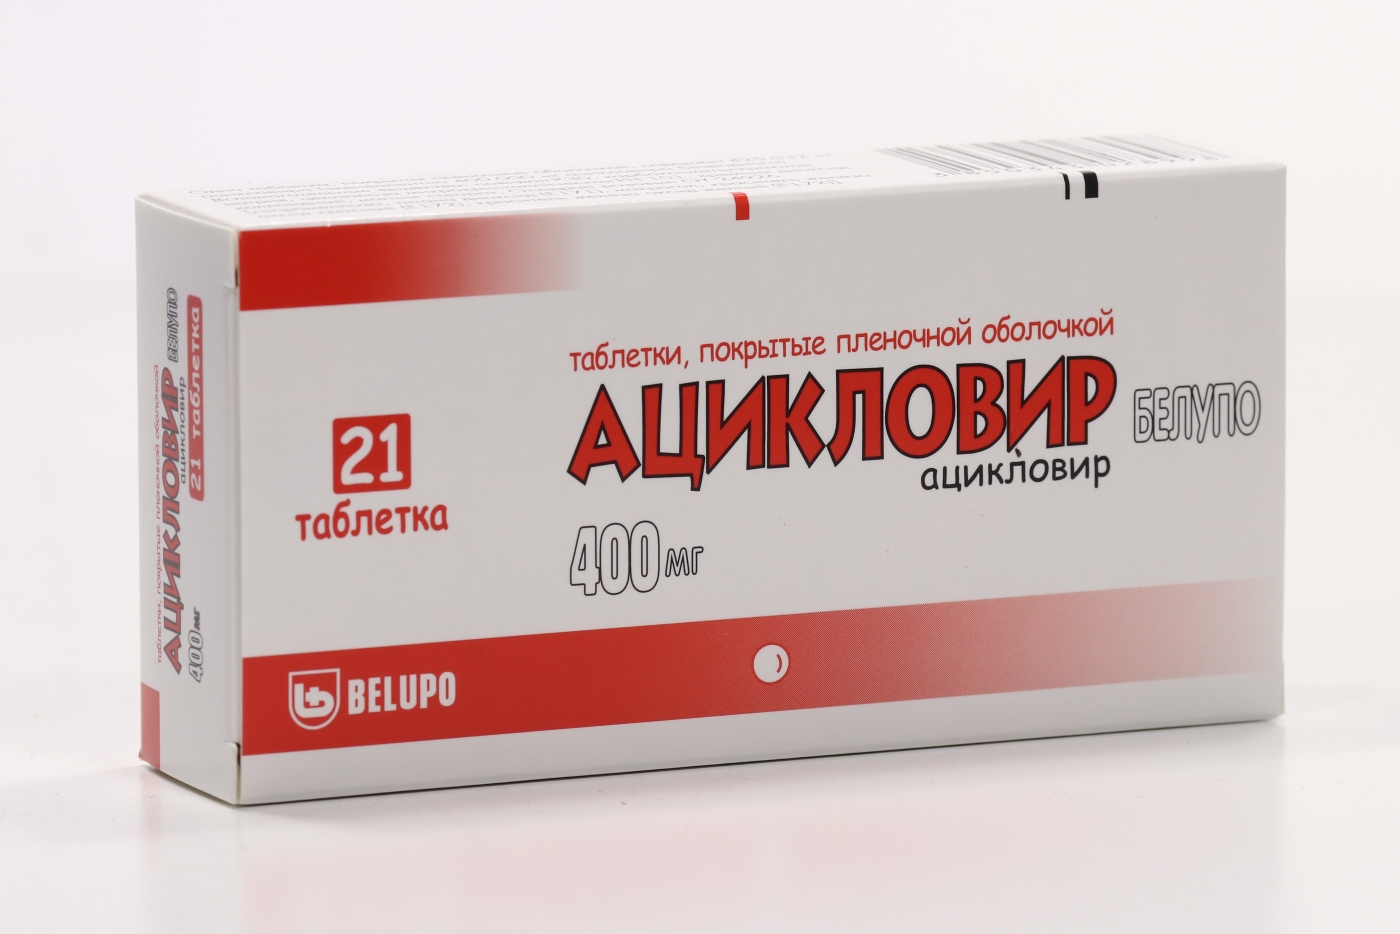 Ацикловир Белупо 400 мг, 21 шт, таблетки покрытые пленочной оболочкой .